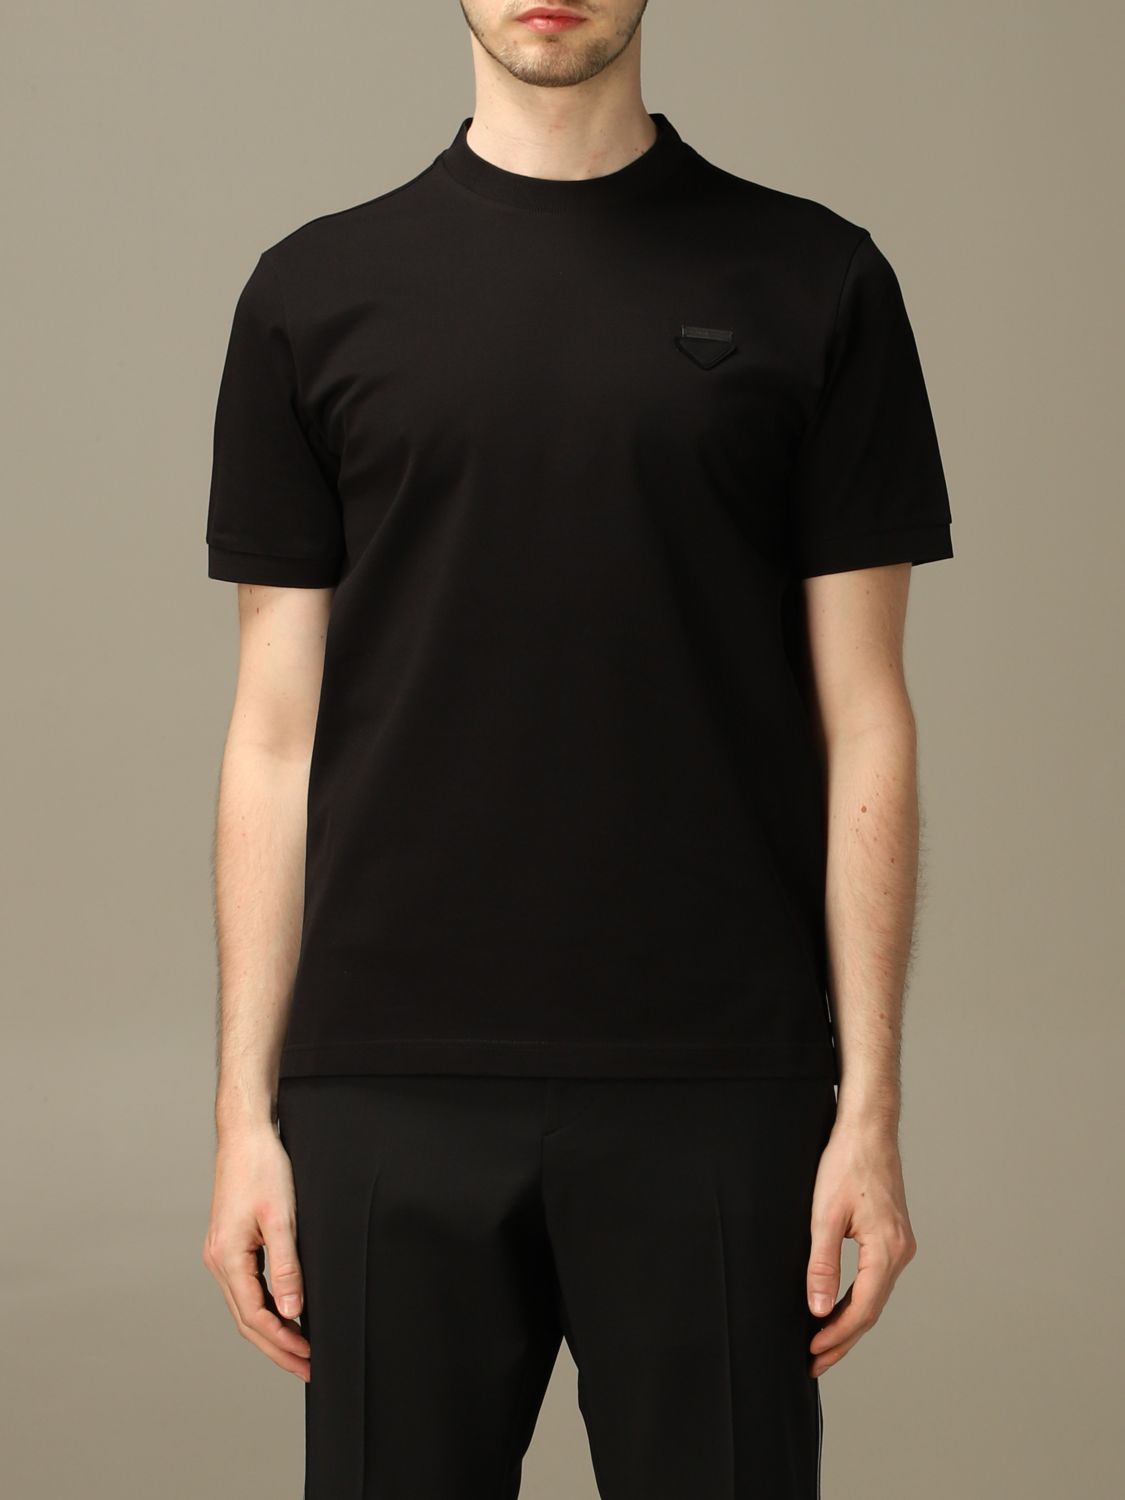 PRADA: pique cotton T-shirt with triangular logo - Black | Prada t ...